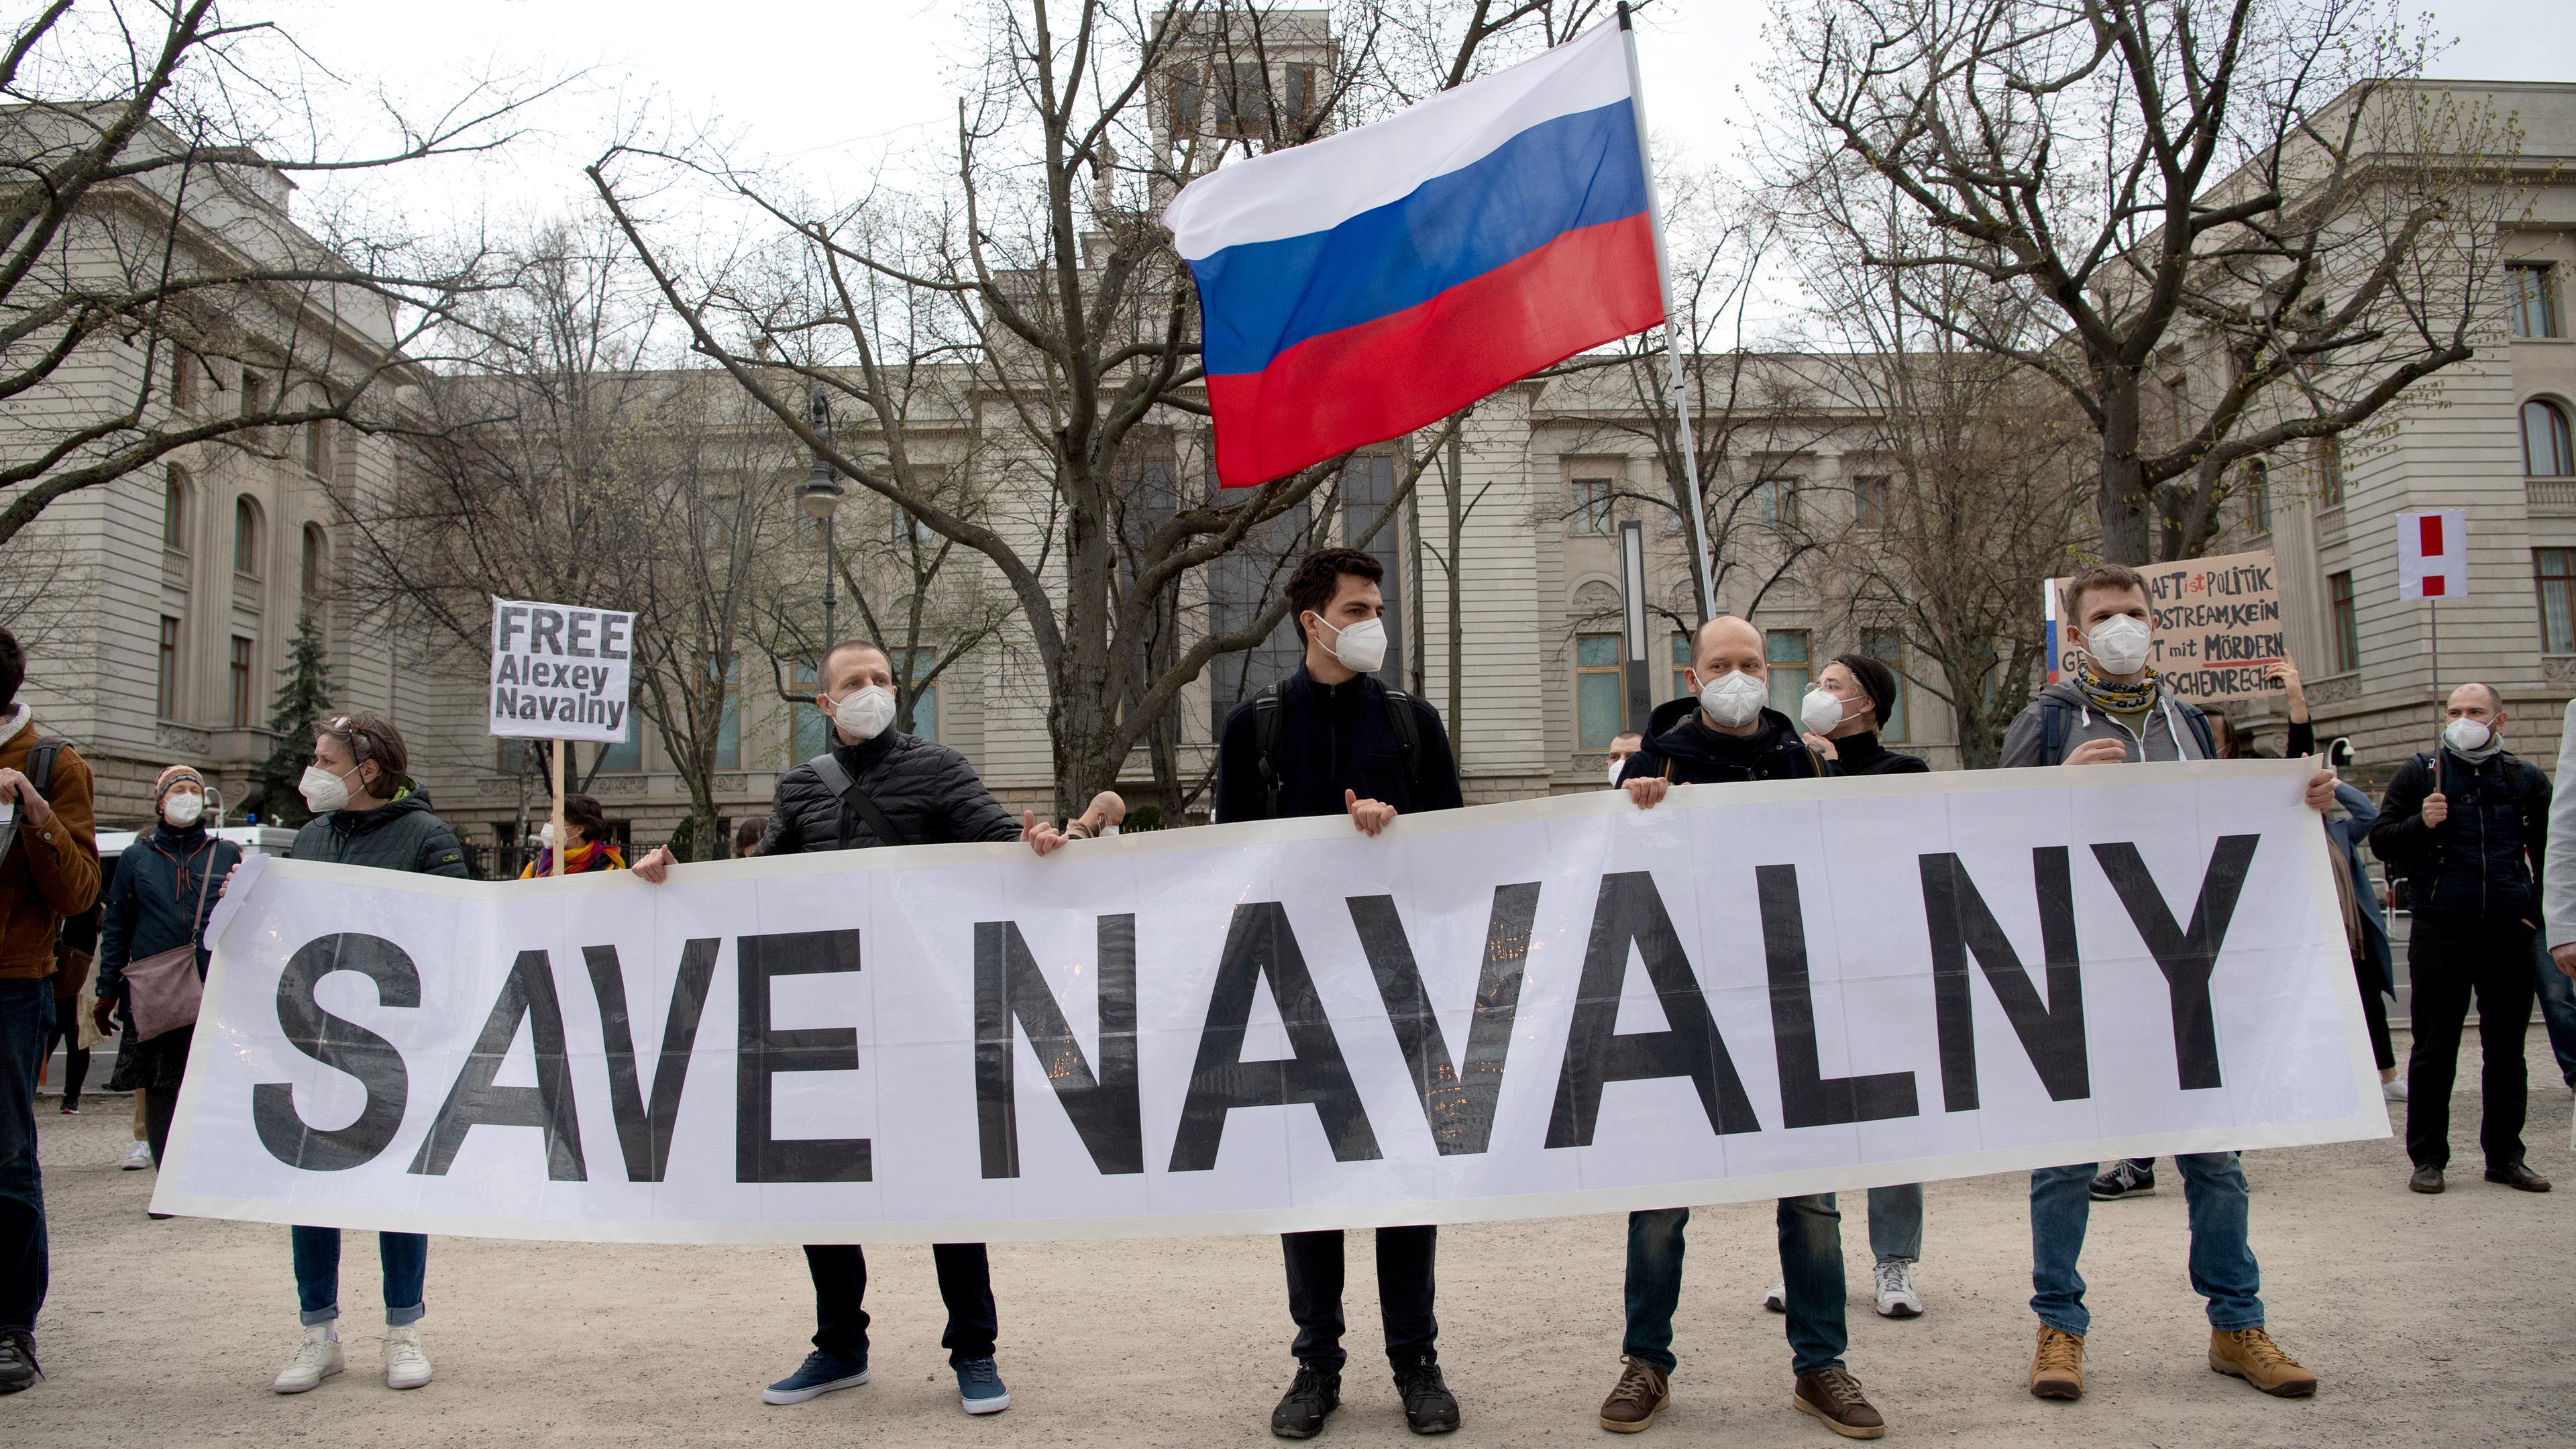 Demonstranten halten schild hoch. Auf dem steht "SAVE NAVALNY"